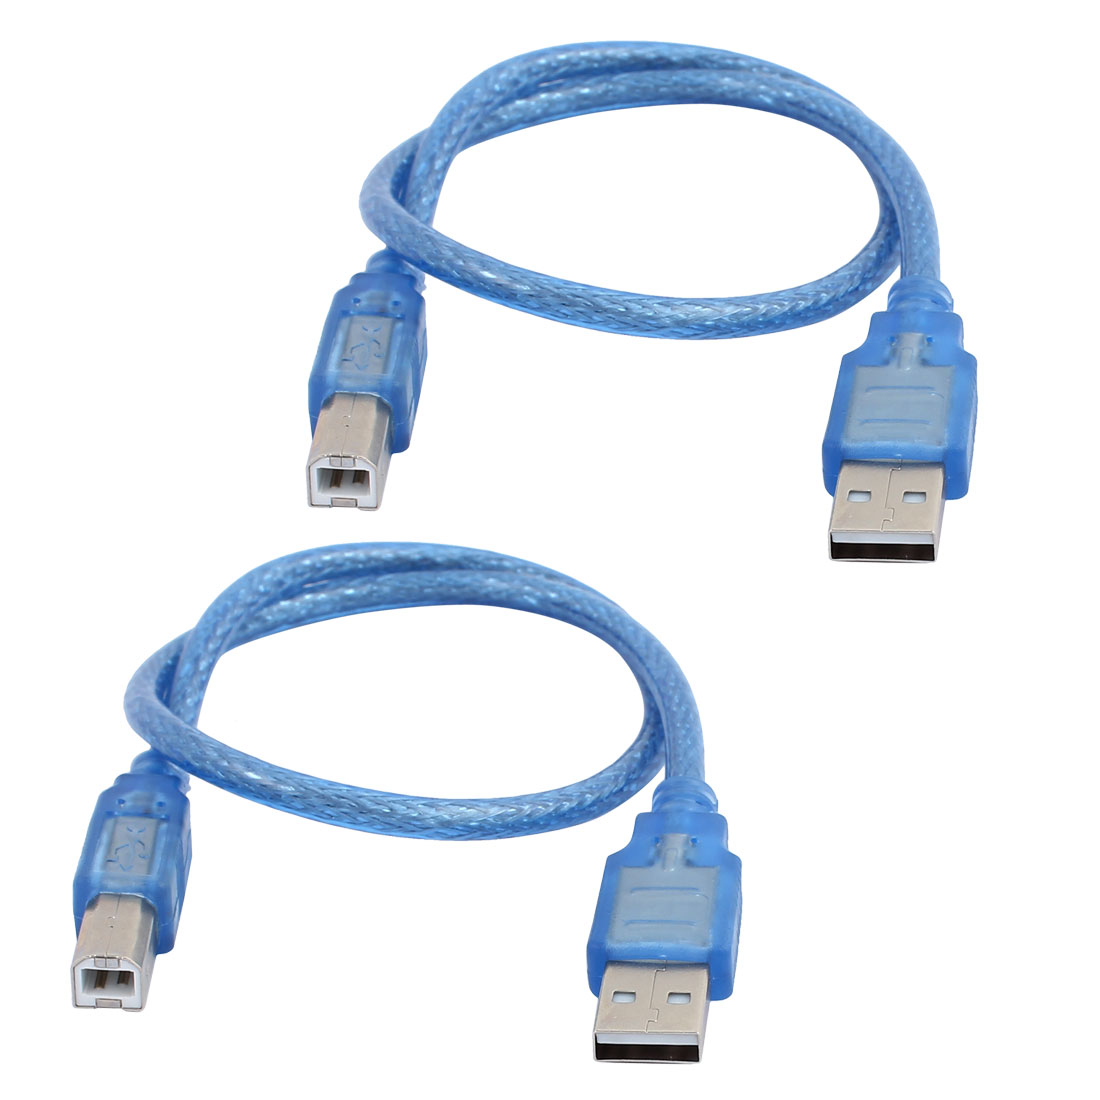 Unique Bargains 2 Pcs Blue USB 2.0 A Male to B Male m/m Flat Printer Cable Cord 50cm Length